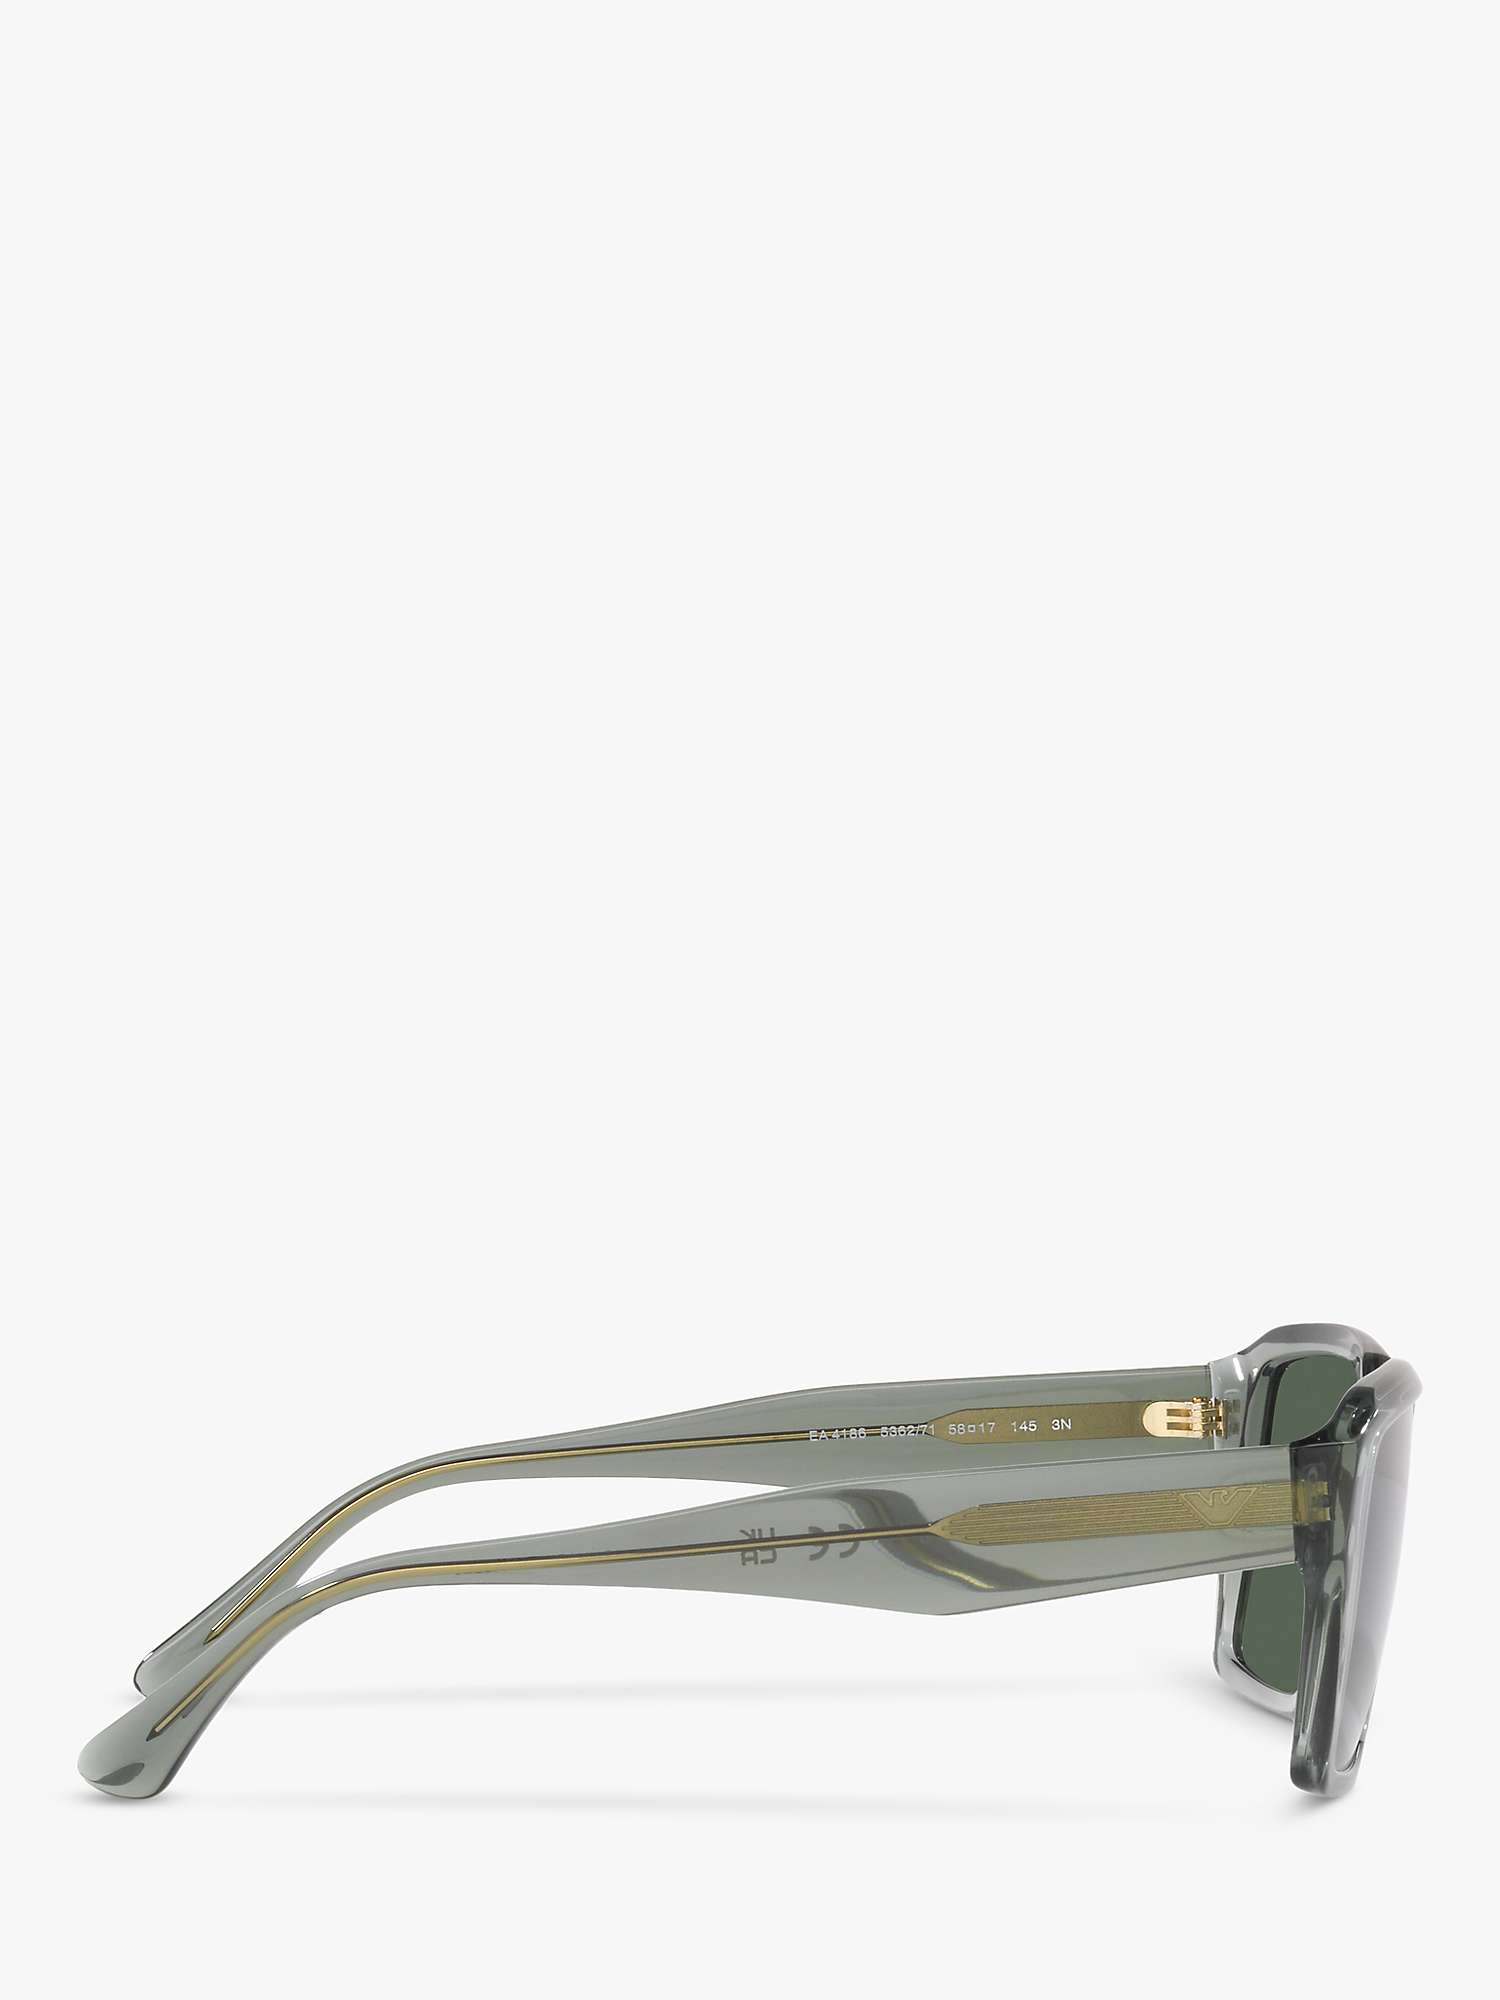 Buy Emporio Armani EA4186 Men's Rectangular Sunglasses Online at johnlewis.com